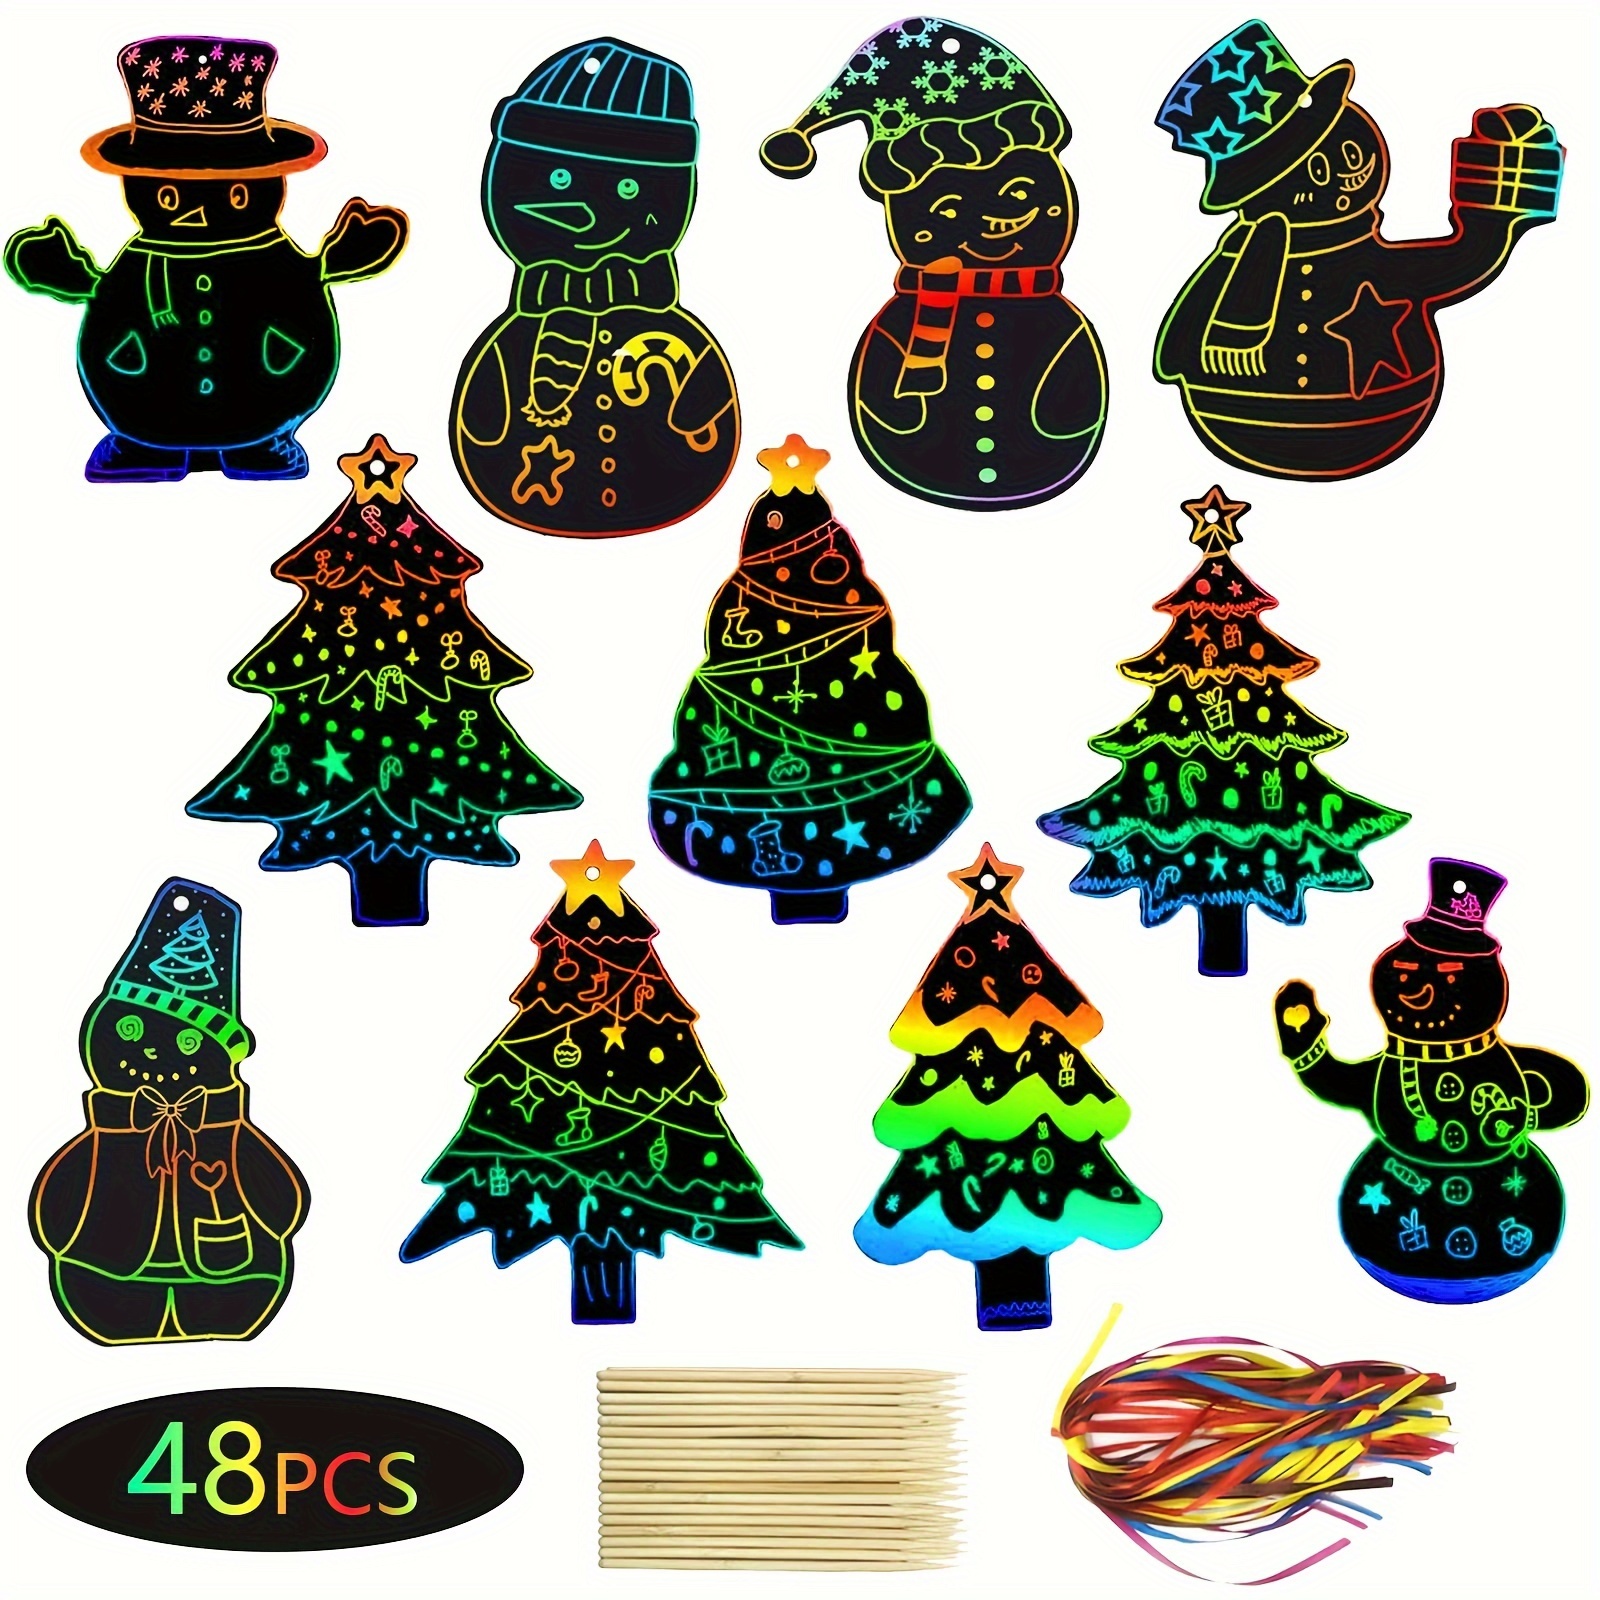 25 pieces/bag Random color Christmas paper straws Santa Claus